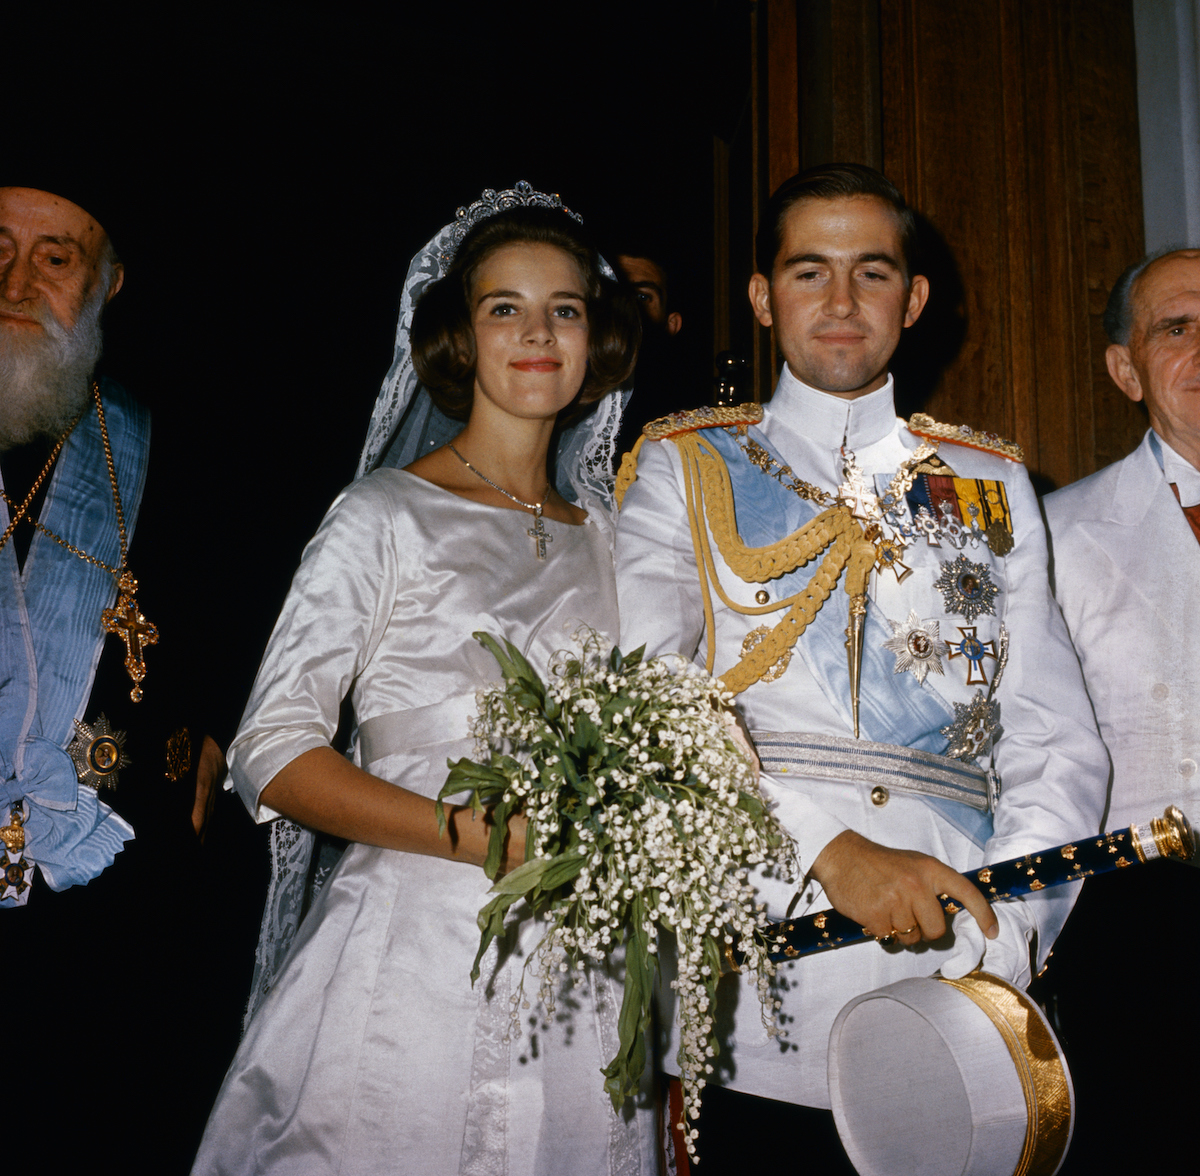 Anne-Marie und Konstantin bei ihrer Hochzeit